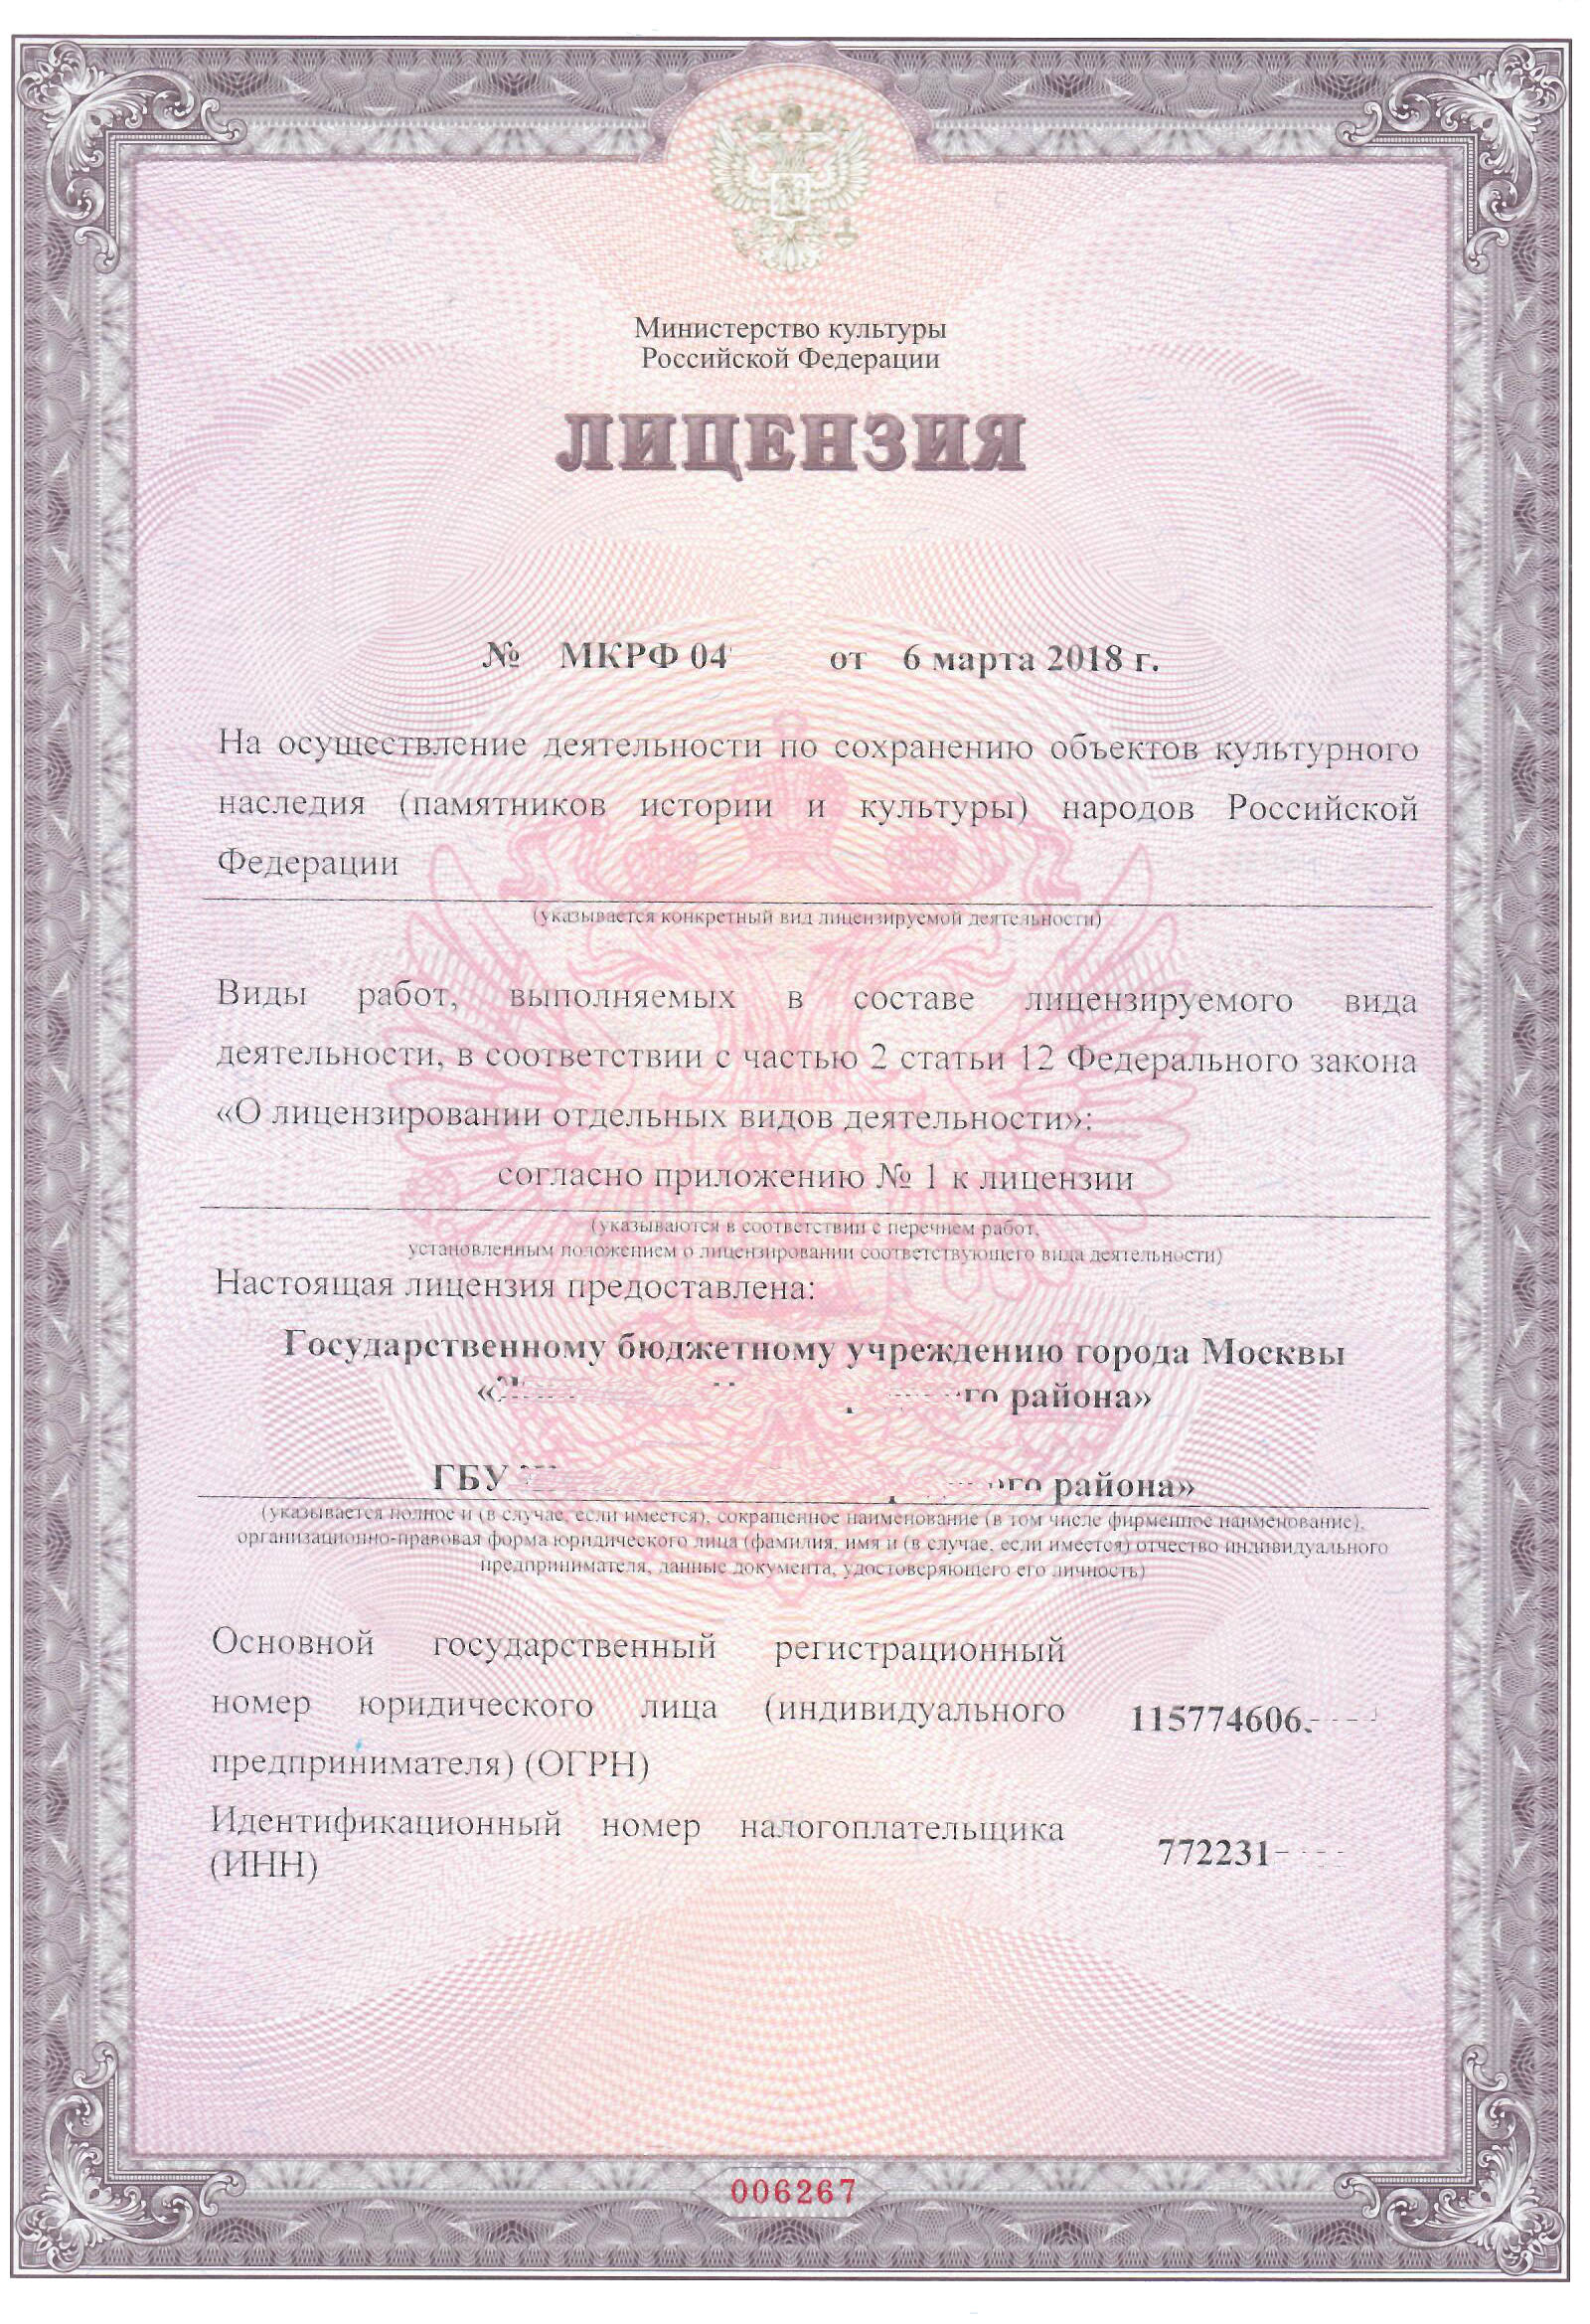 Пример лицензии Министерства культуры